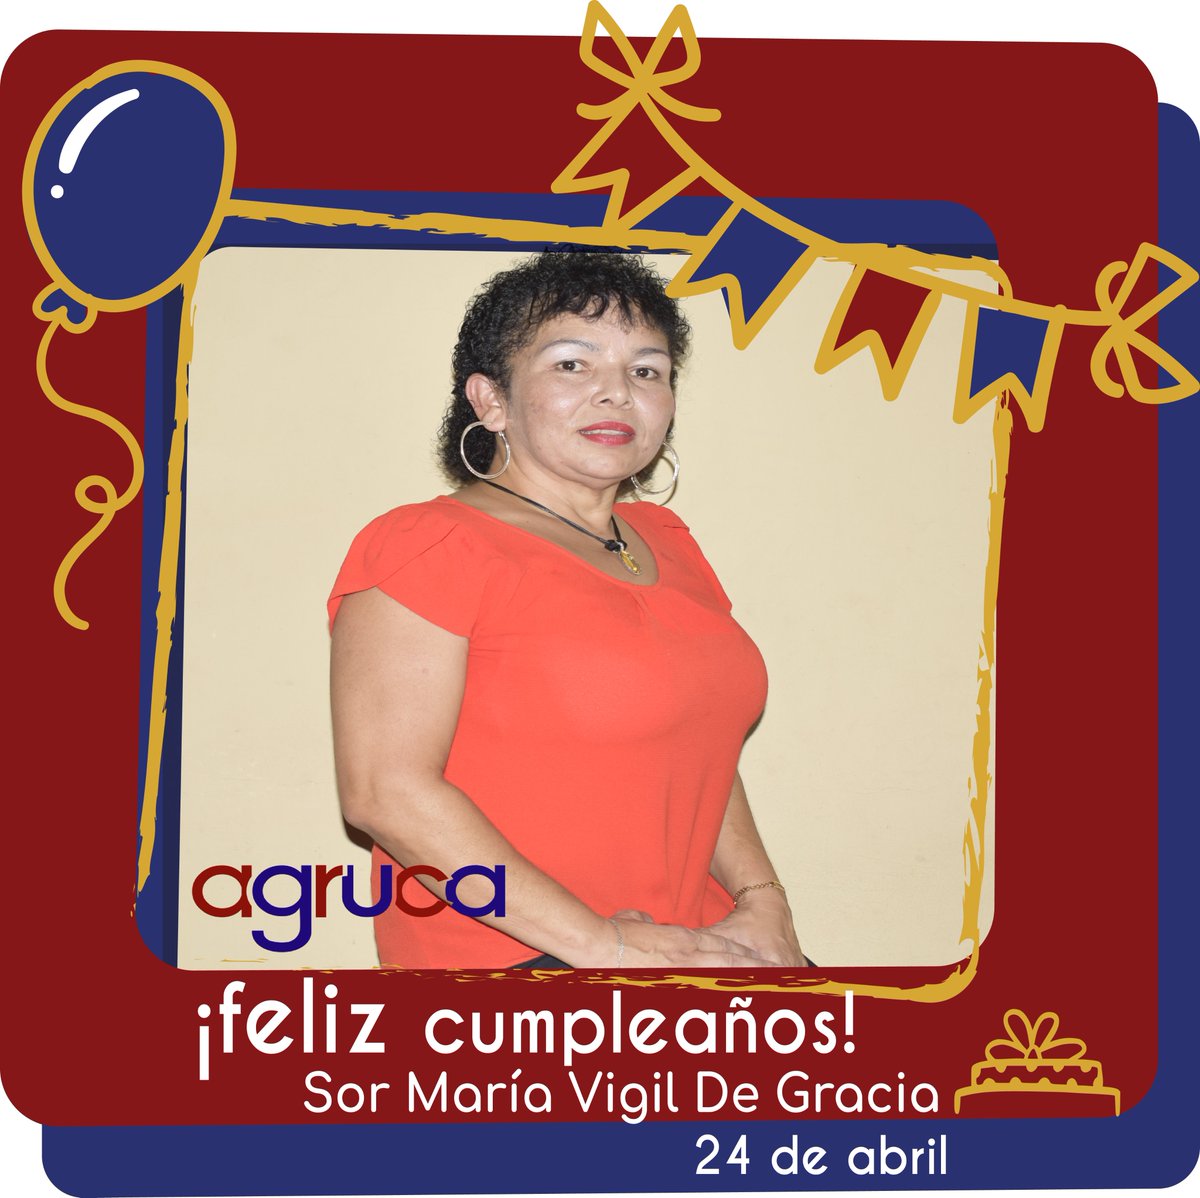 ¡Hoy celebramos el cumpleños de nuestra compañera Sor María Vigil de Gracia! 🎂🥳🎈🎊
#somosfamilia #somosagruca